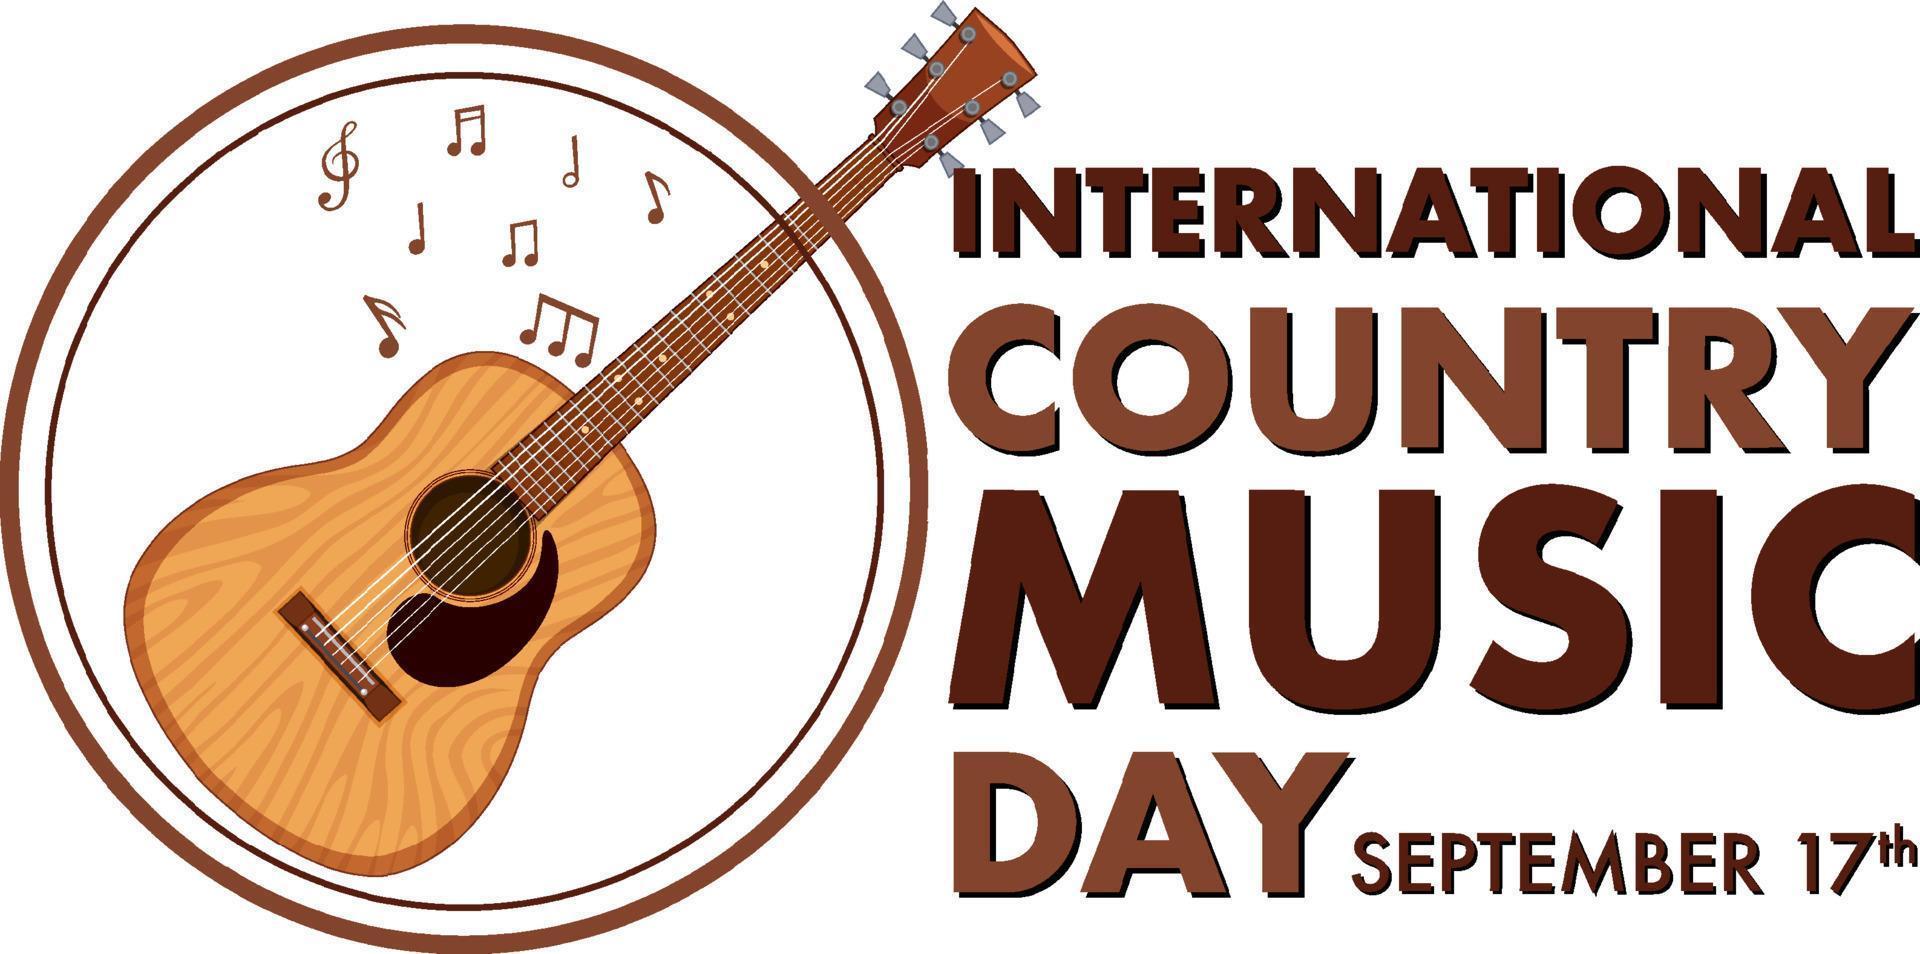 Internationaler Tag der Country-Musik vektor